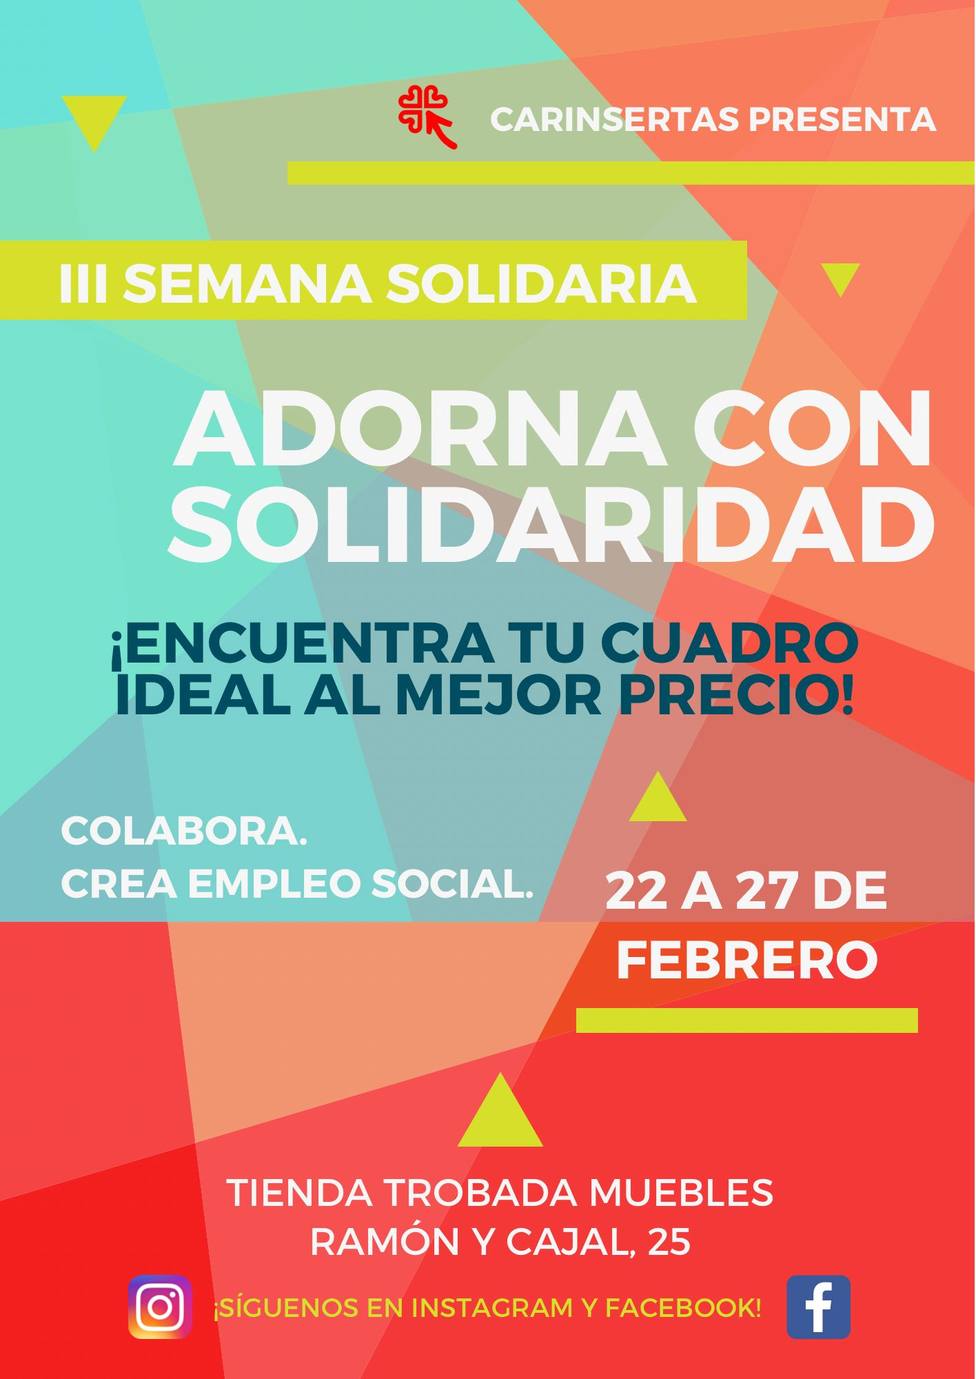 Orgullo Generosidad cristiandad Carinsertas pone en marcha la III semana solidaria con la venta de cuadros  y tapices en trobada muebles - Informativo Mediodía en Huesca - COPE